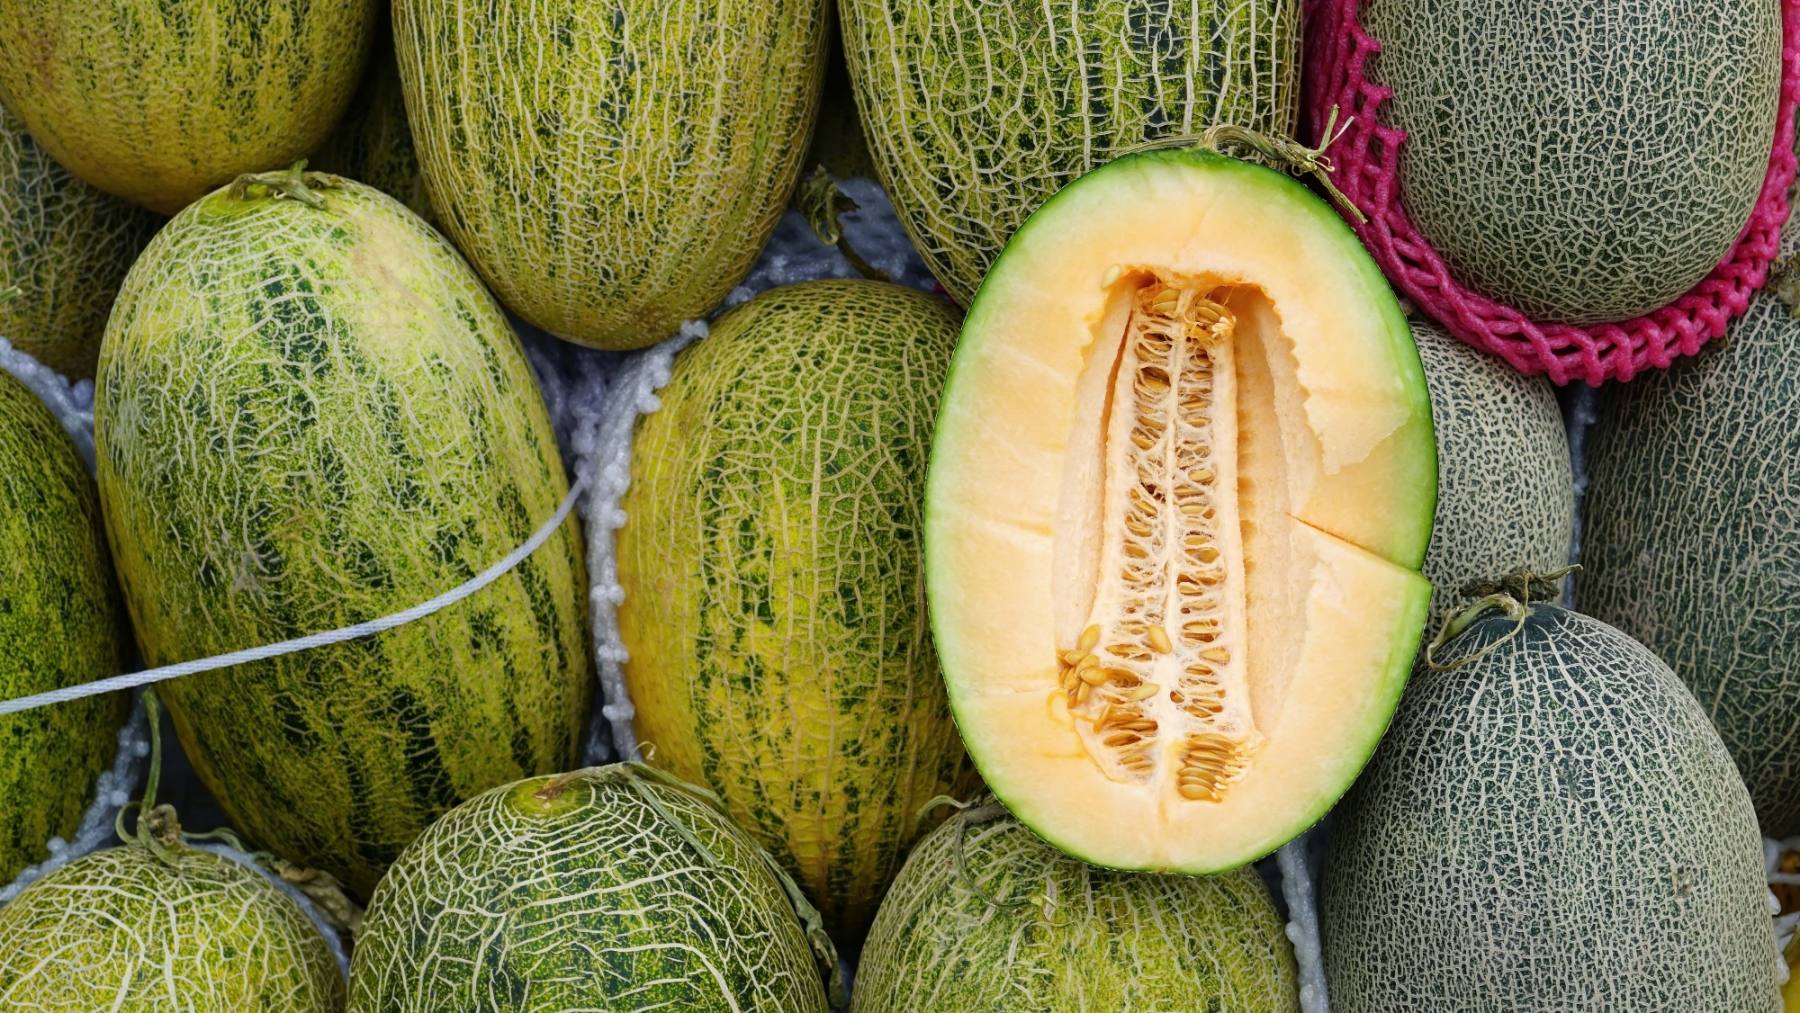 La partida de melones marroquíes con pesticida fue emitida el pasado 5 de abril